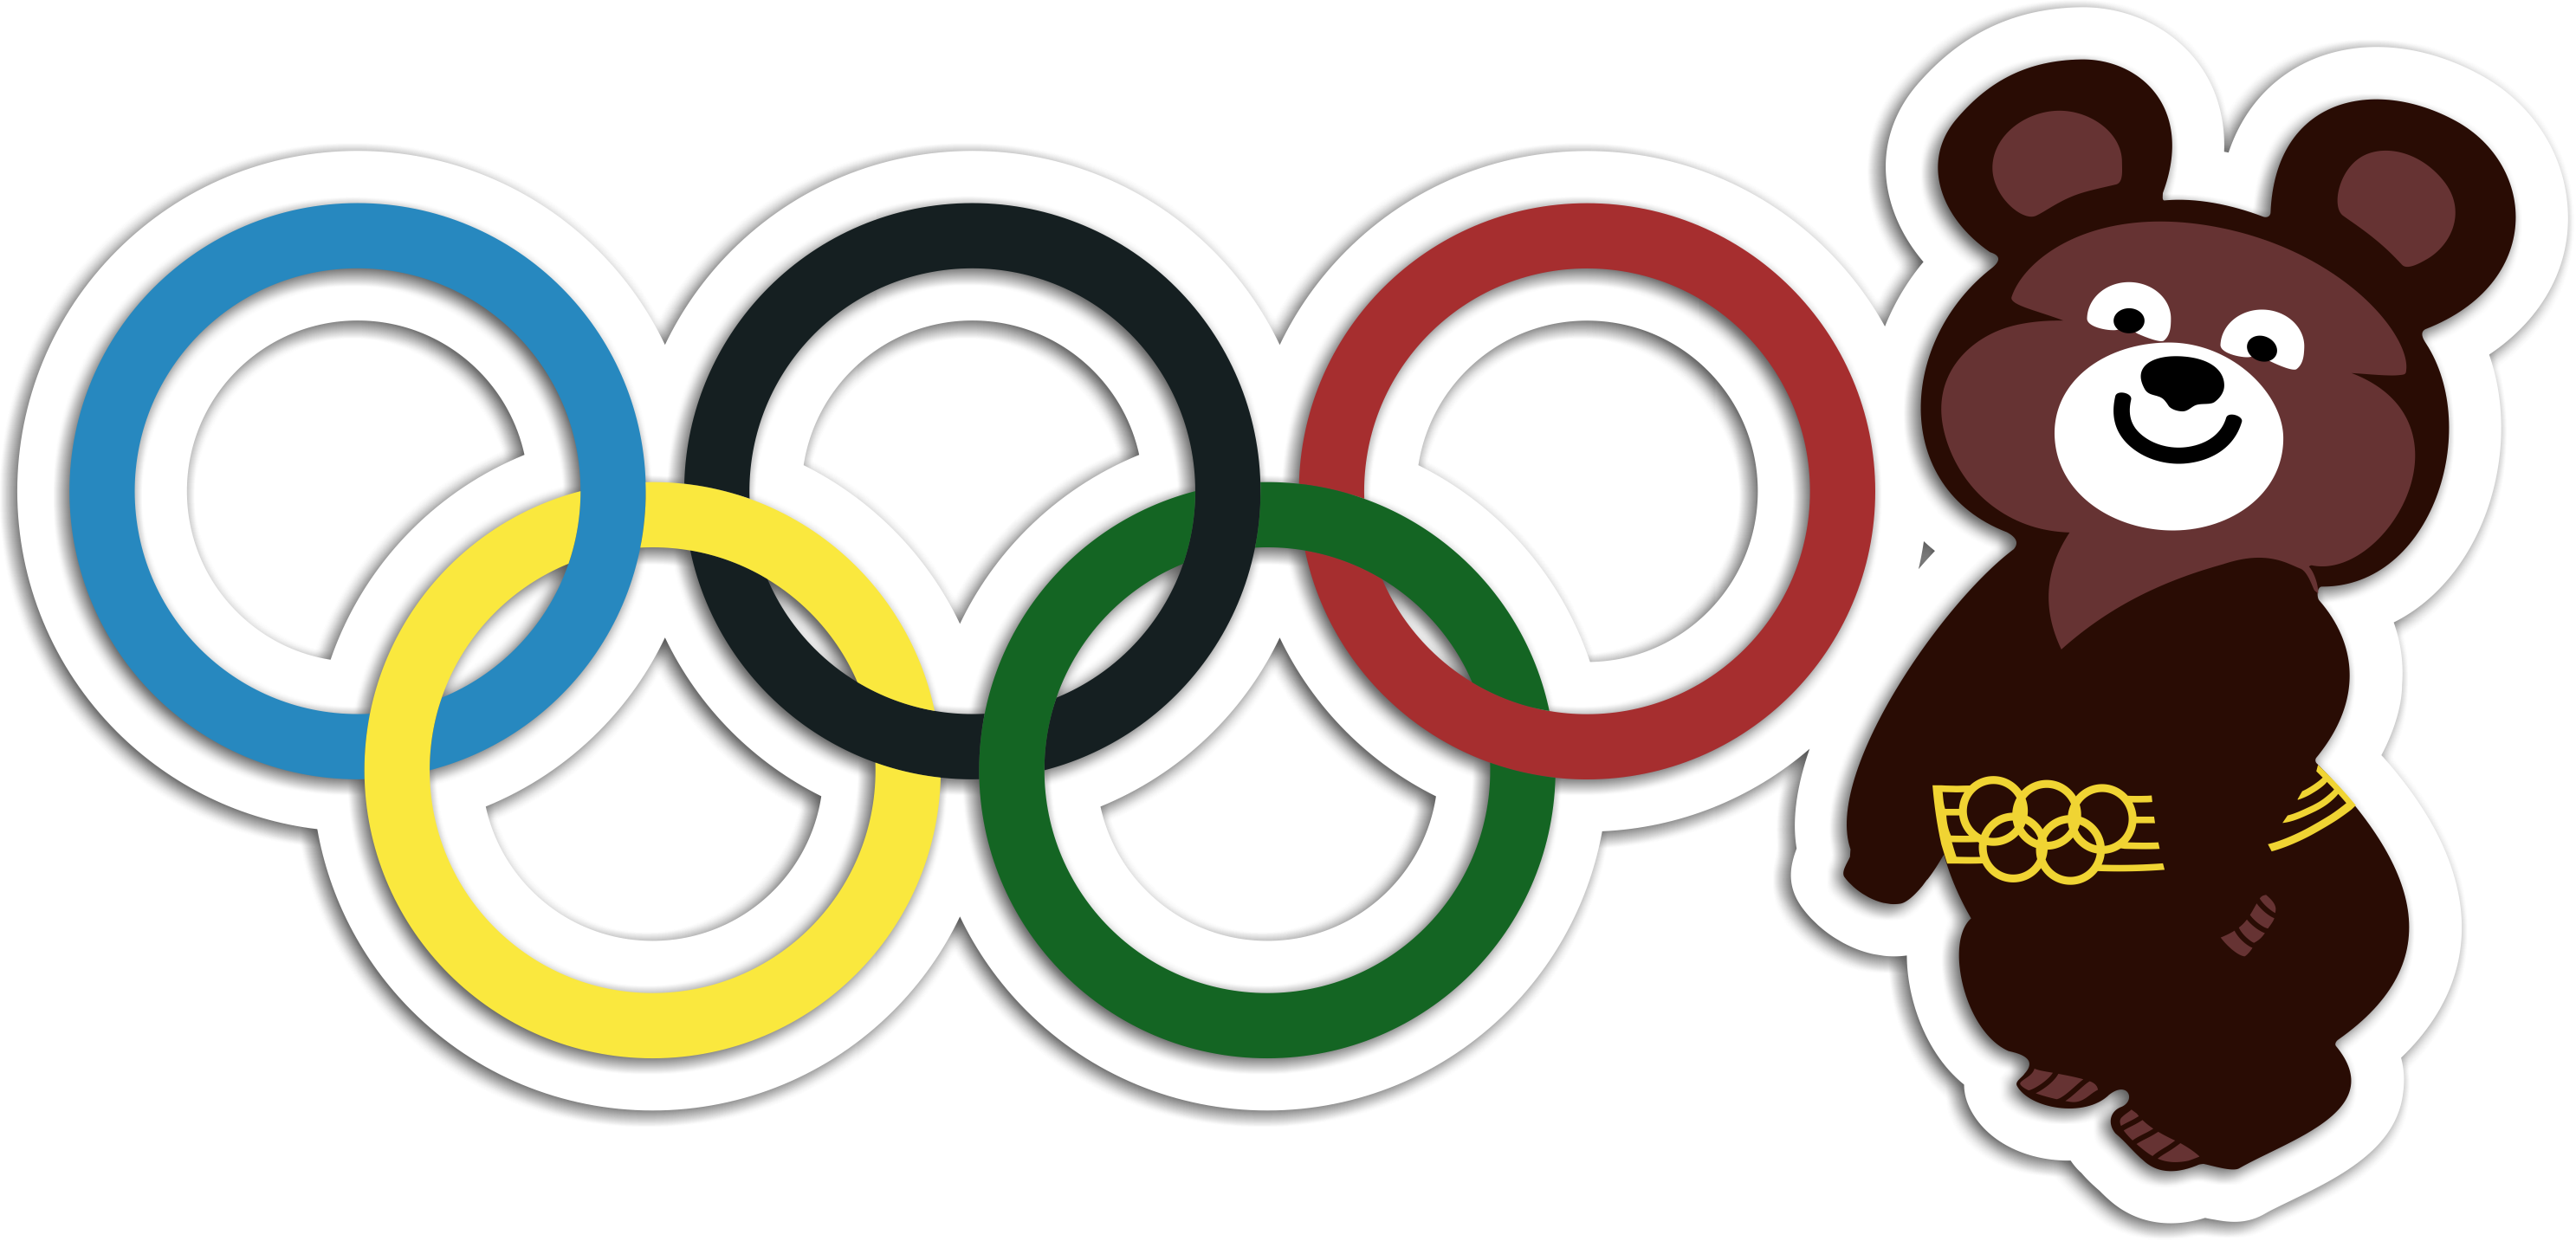 Олимпийский Мишка 2014: как будет правильно нарисовать сочинский символ?